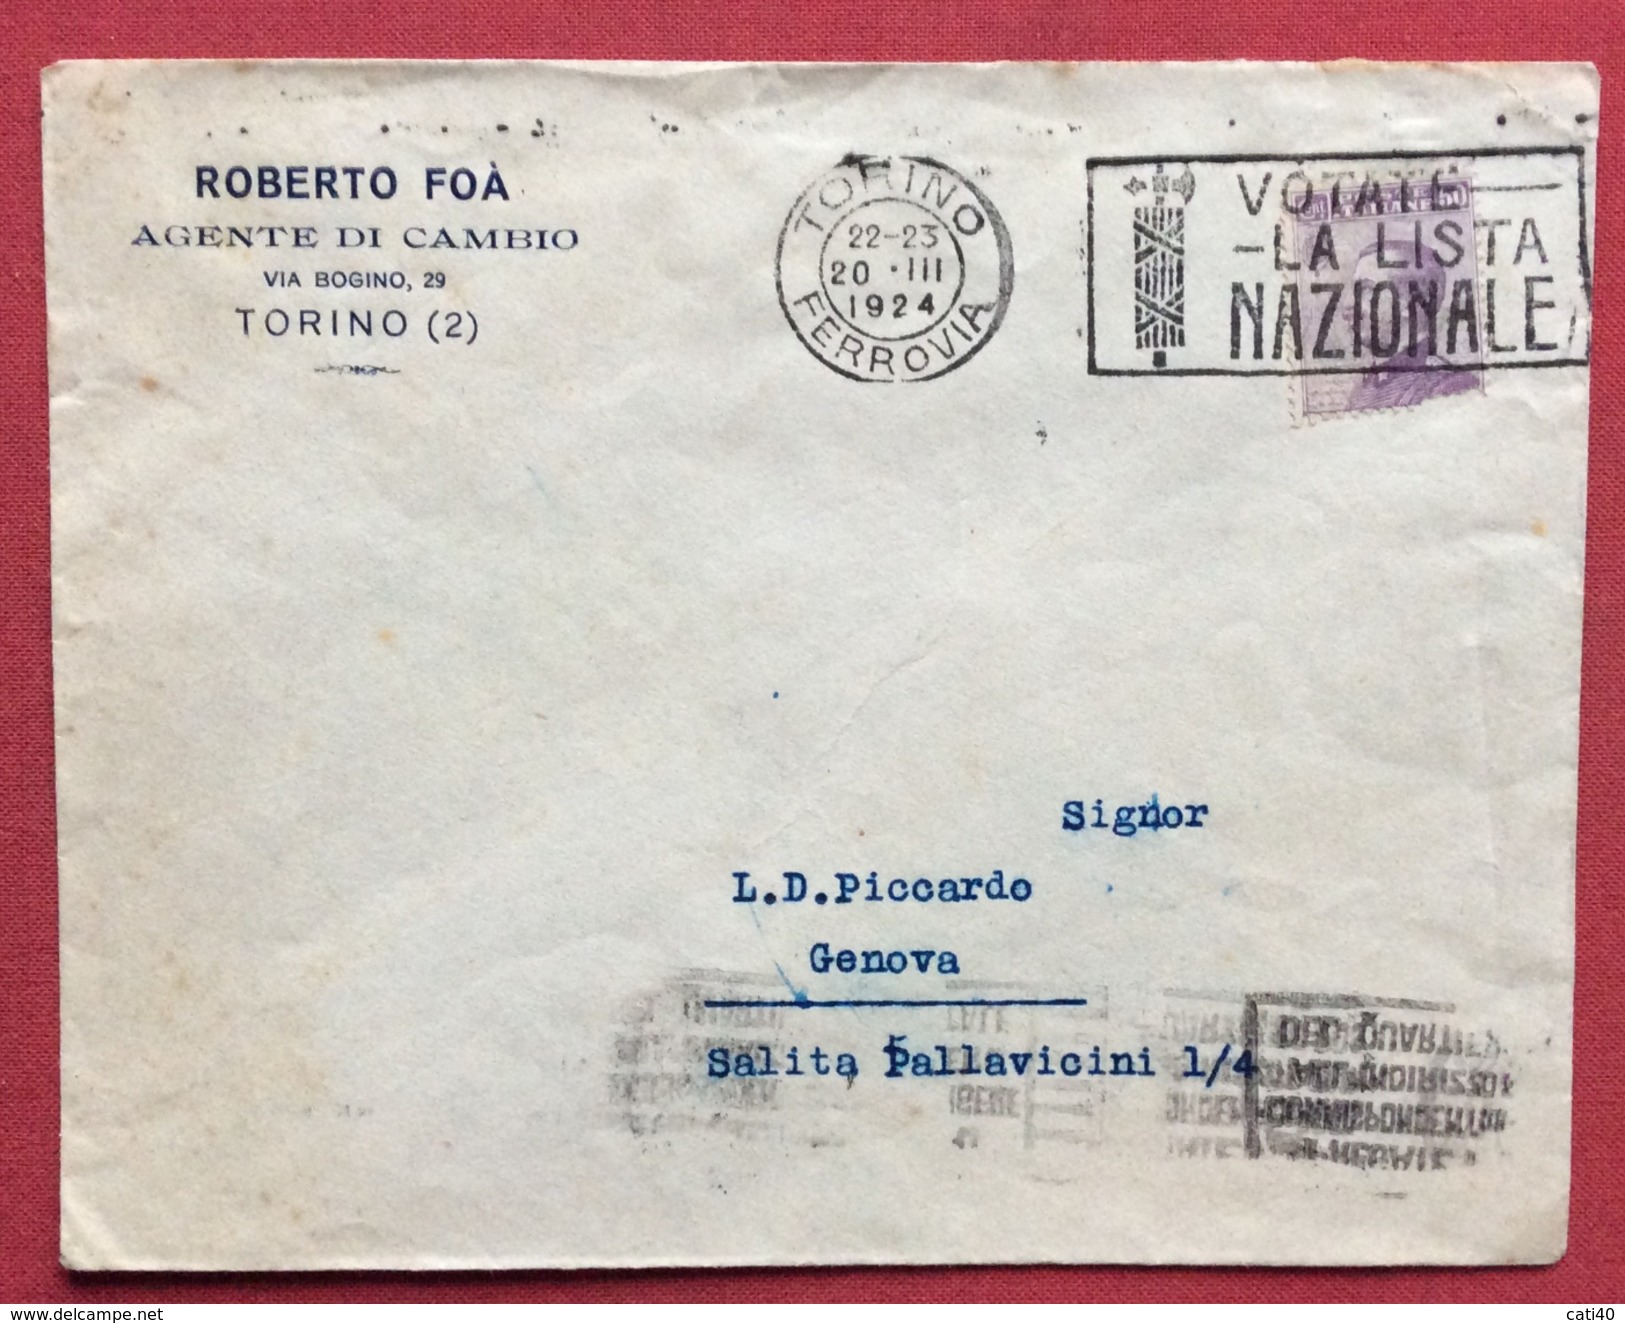 ANNULL0 A TARGHETTA  VOTATE LA LISTA NAZIONALE TORINO 20/3/1924 BUSTA ROBERTO FOA' AGENTE DI CAMBIO PER GENOVA - Storia Postale